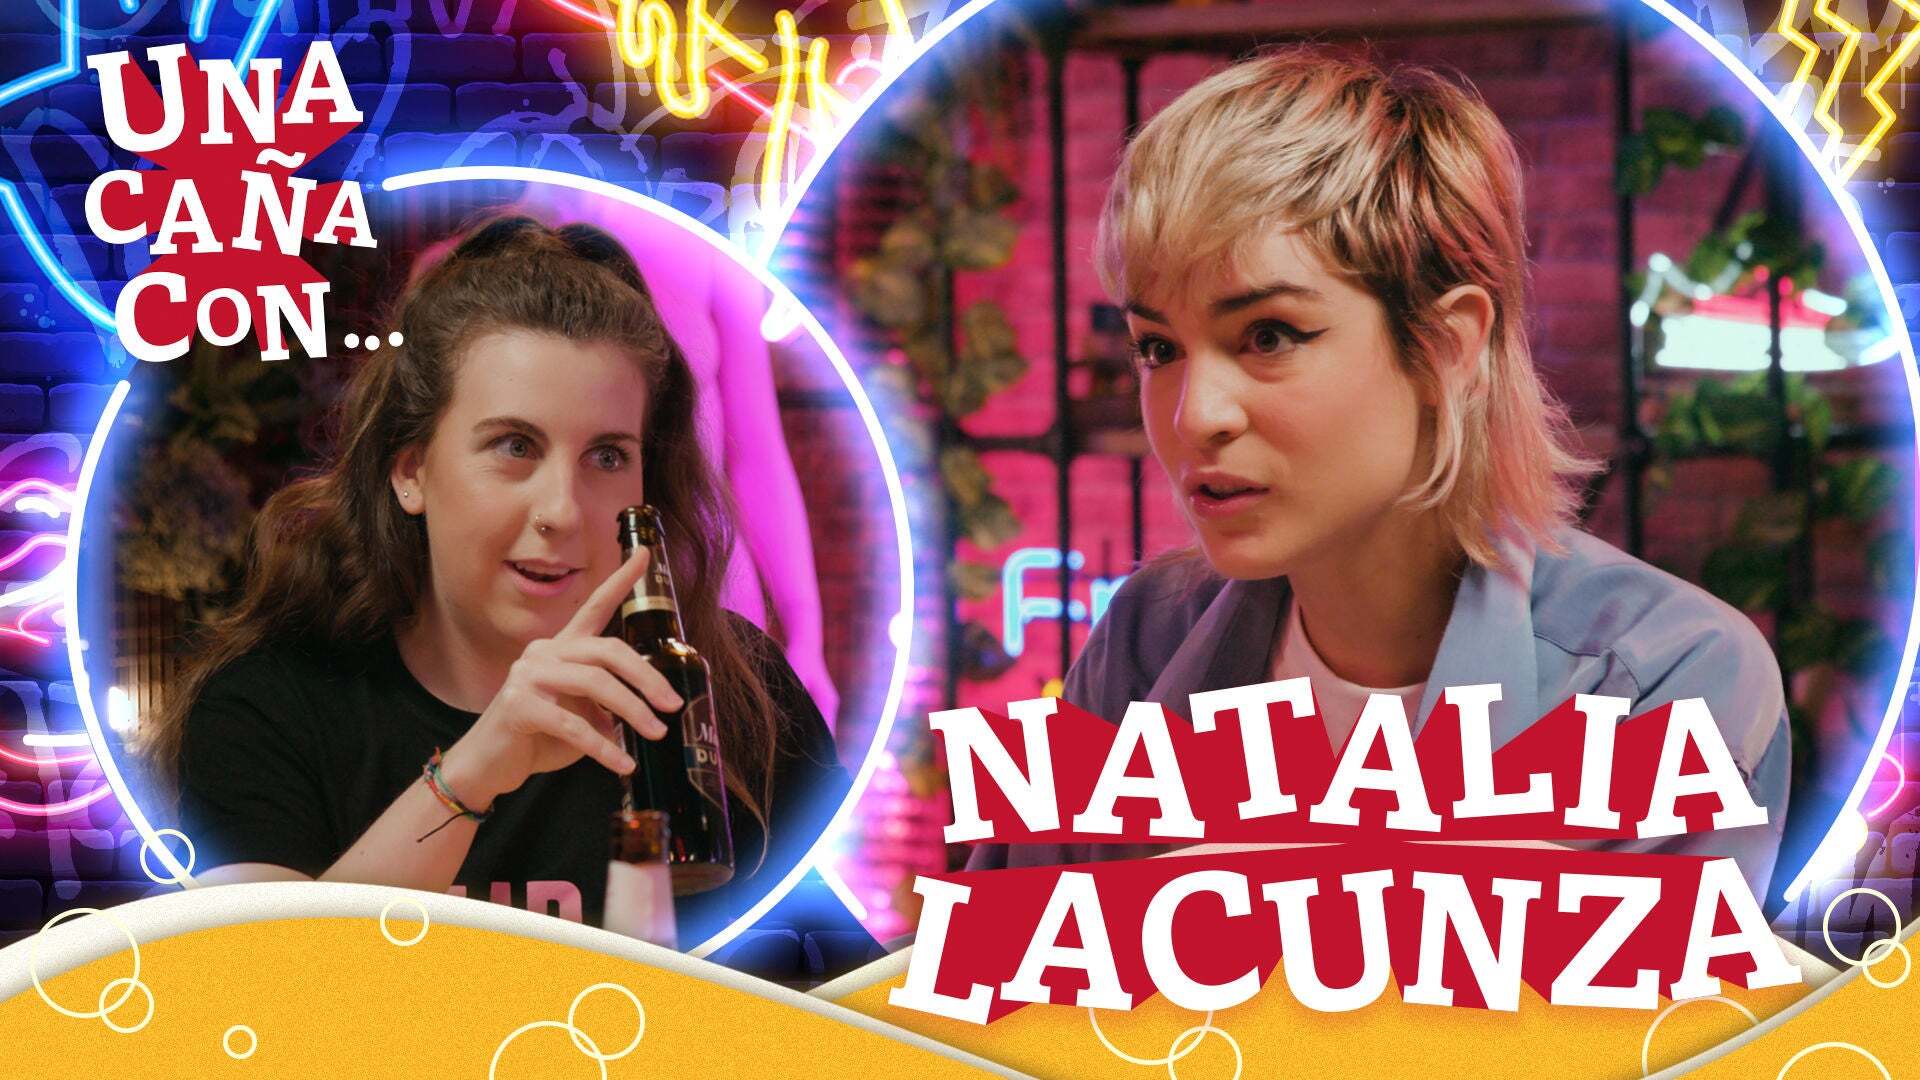 Temporada 1 #UnaCañaCon Natalia Lacunza: “Tengo la suerte de dedicarme a lo que siempre he querido”